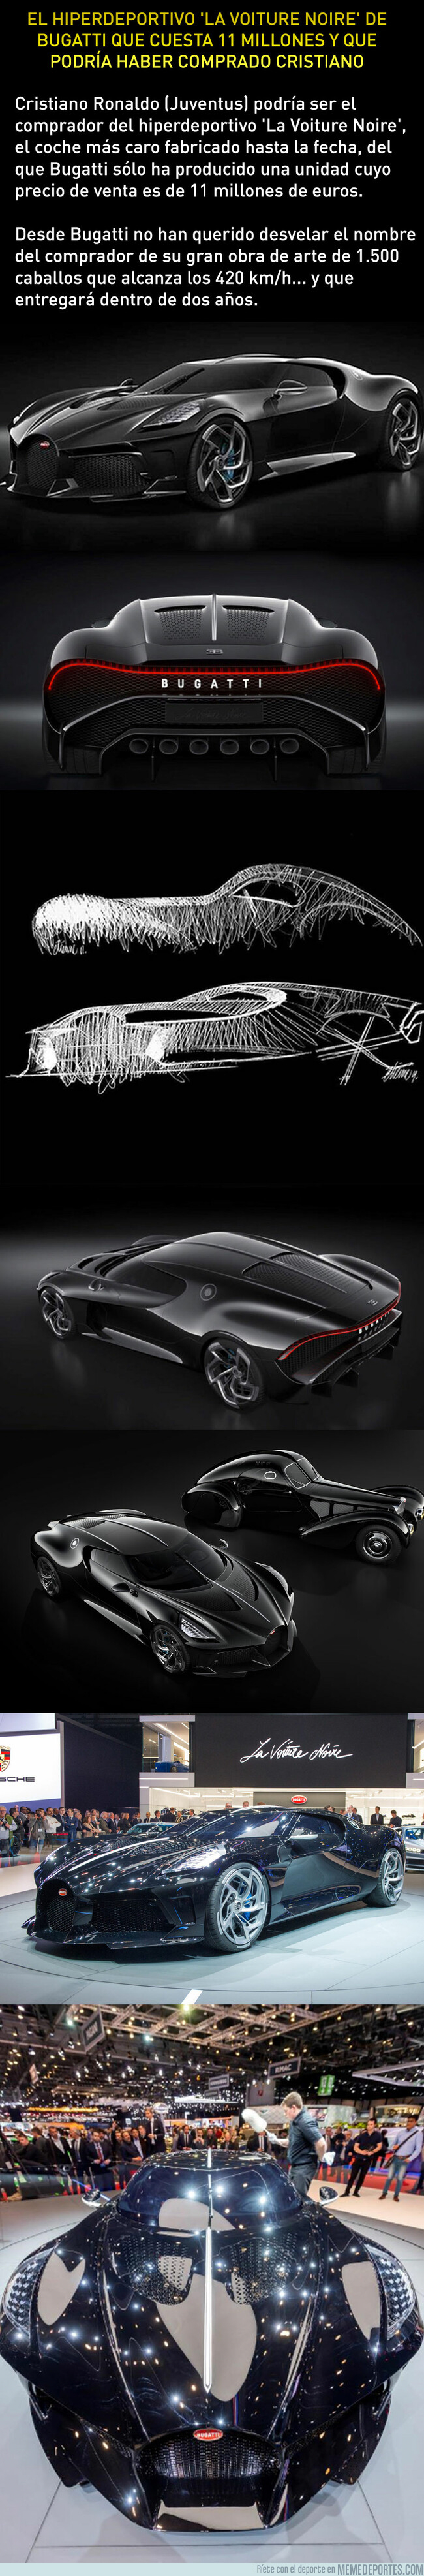 1073030 - Cristiano podría ser el comprador del coche más caro del mundo: Un Bugatti de 11 millones